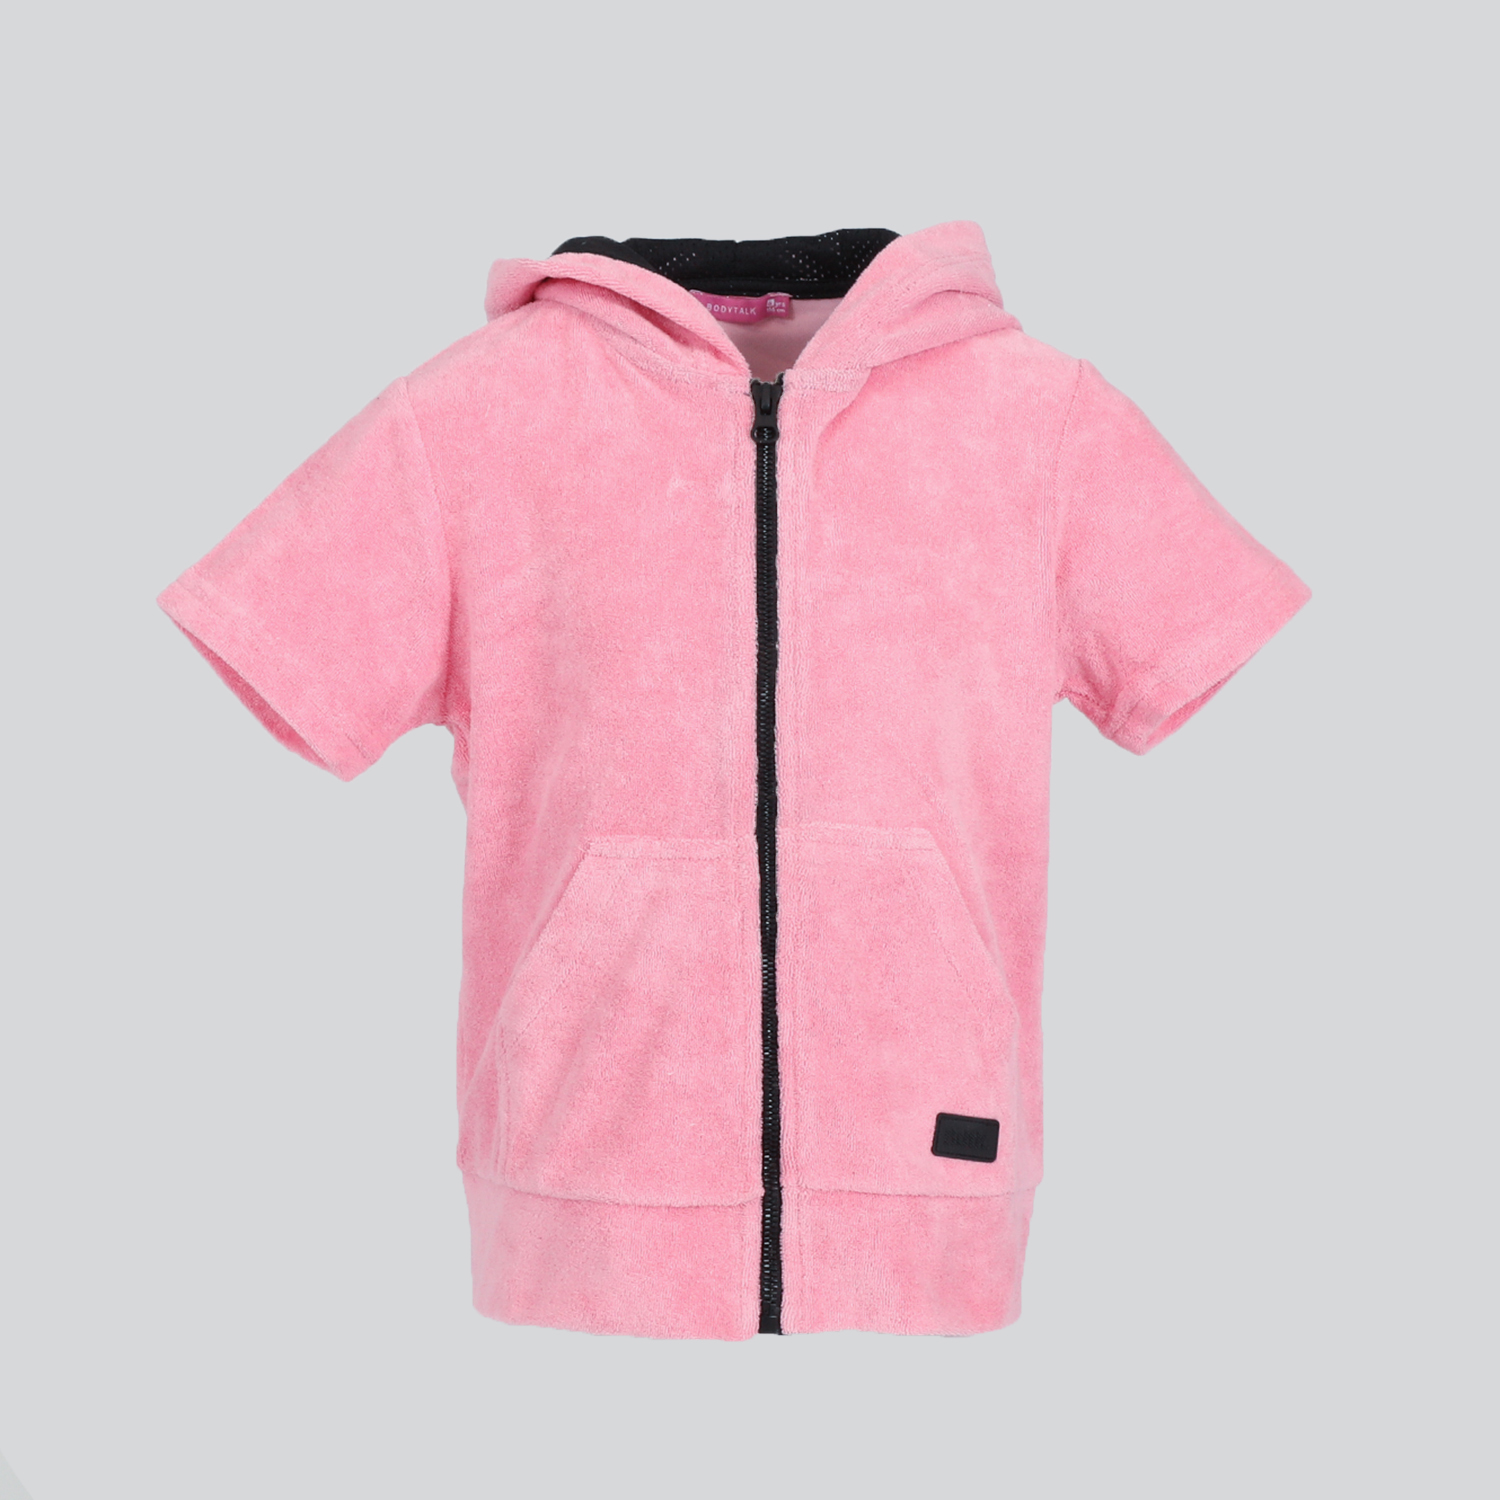 Παιδικά/Girls/Ρούχα/Φούτερ BODYTALK - Παιδική αθλητική ζακέτα BODYTALK ροζ